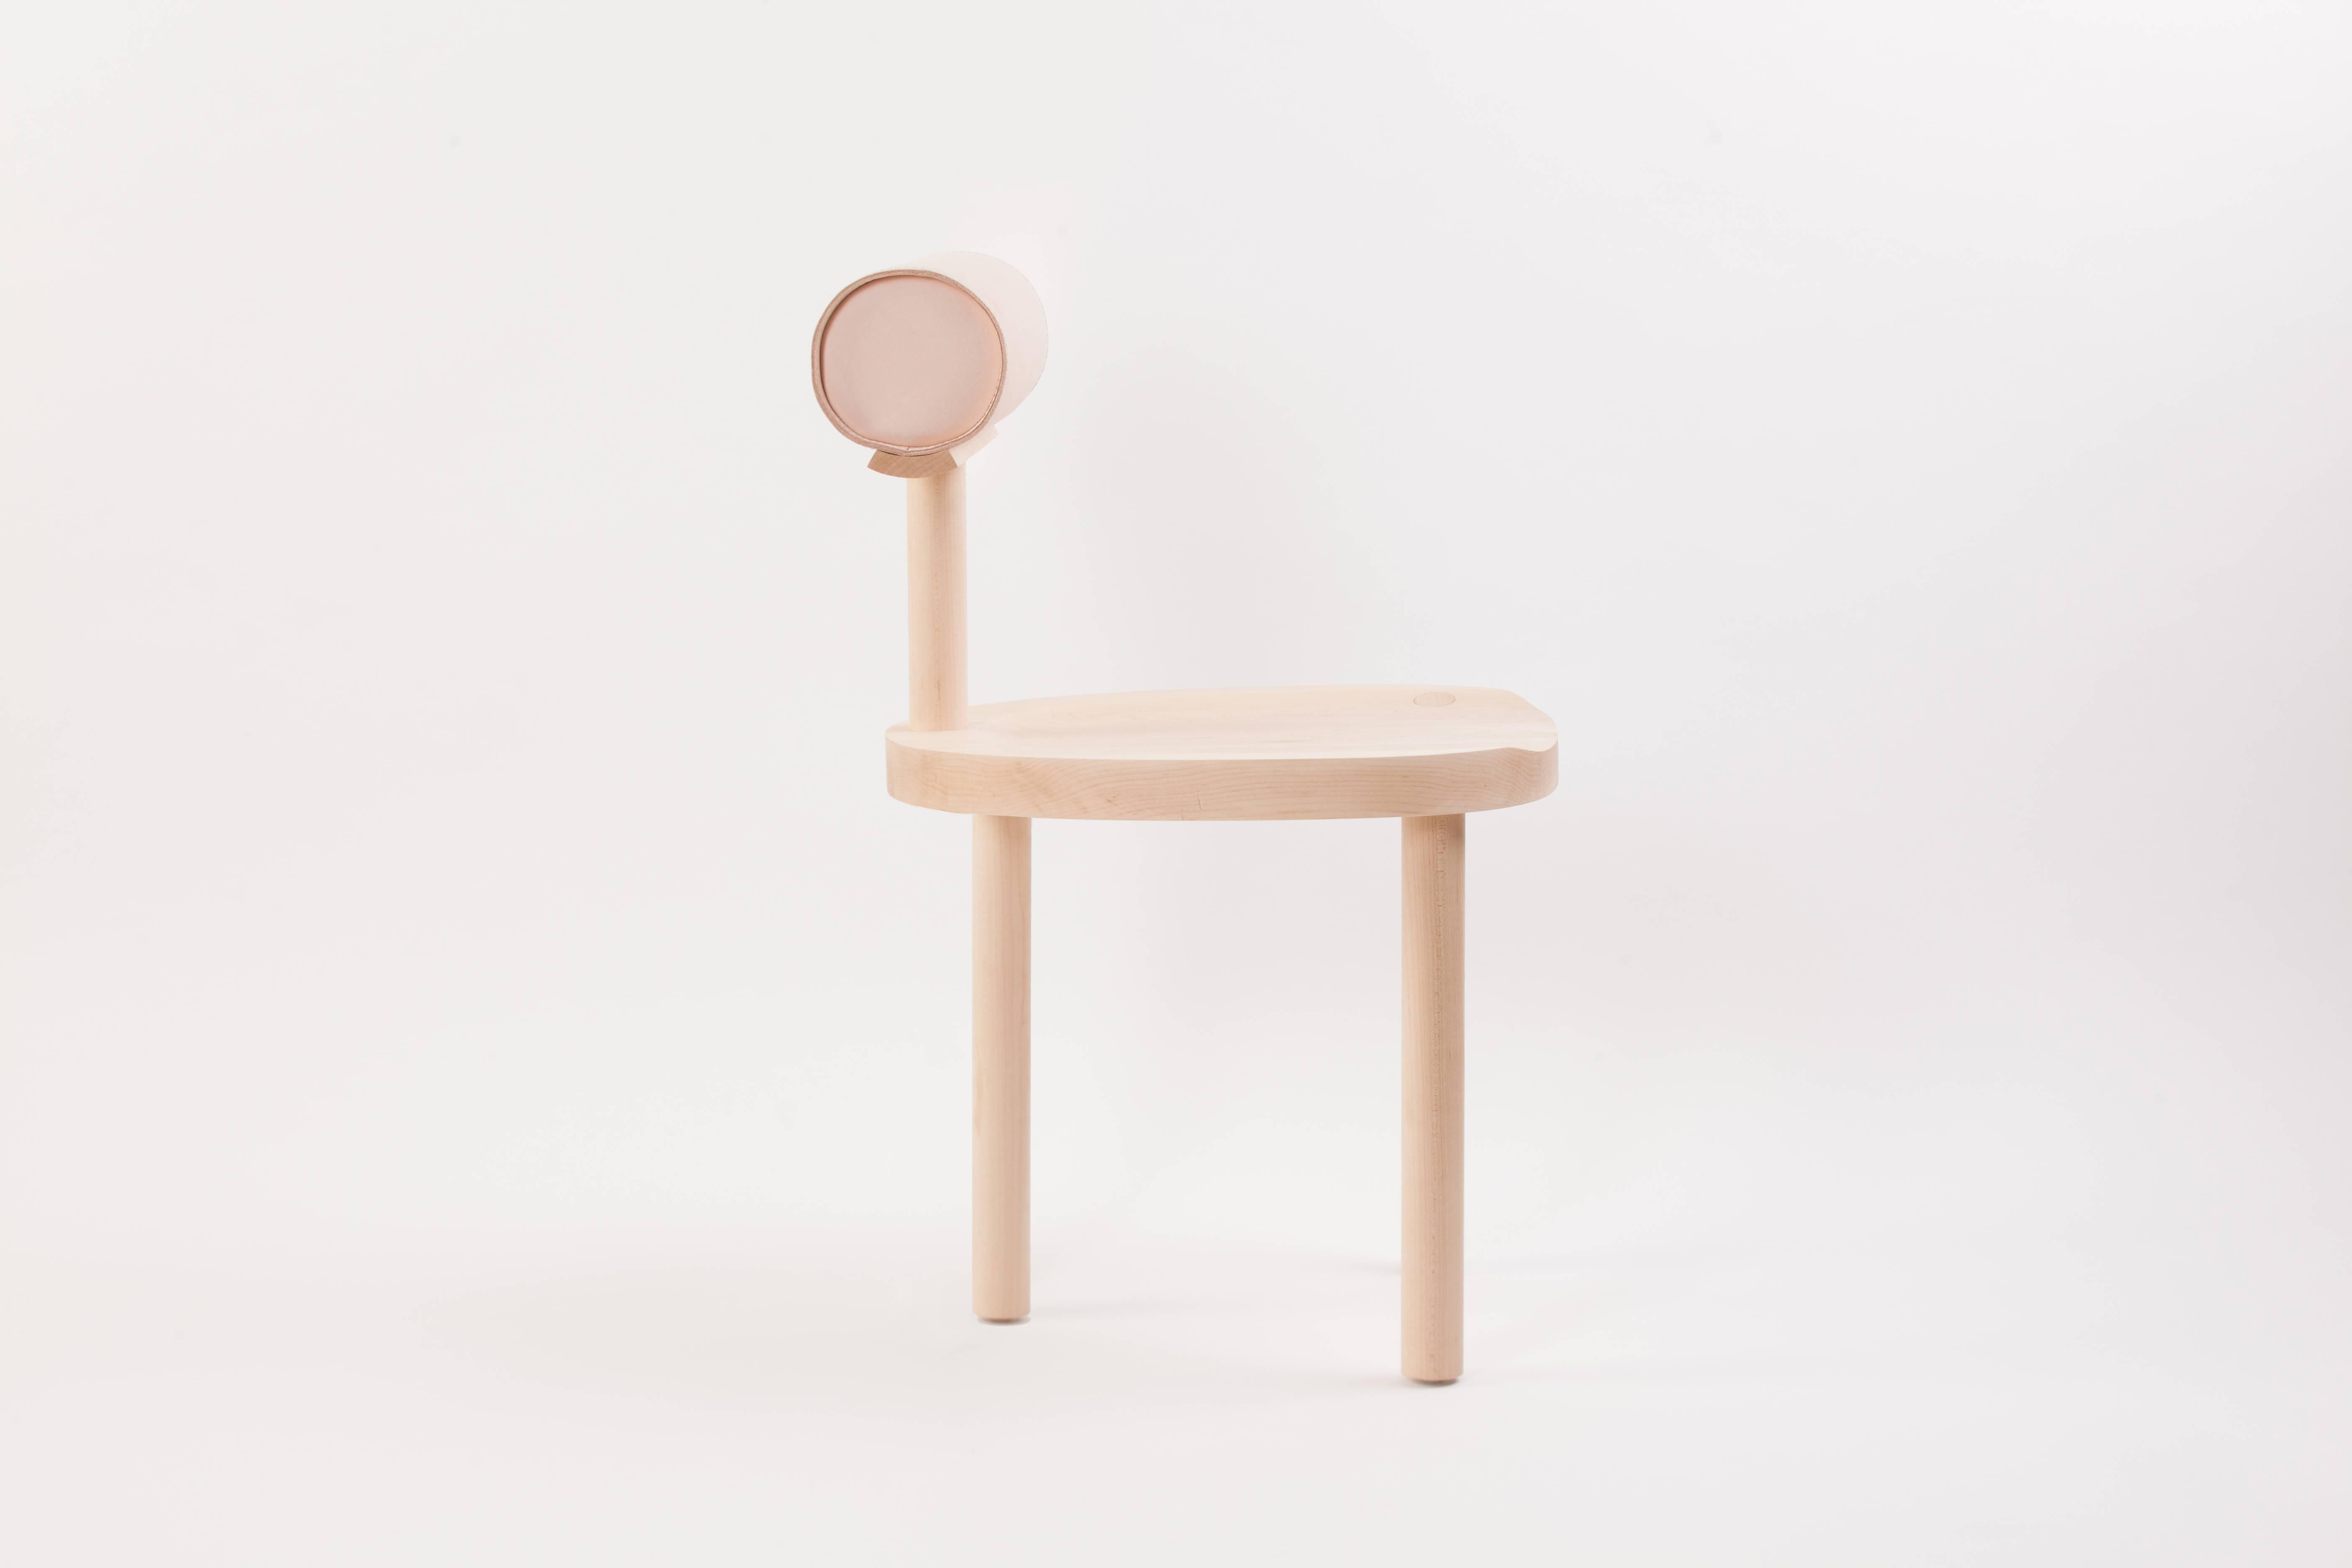 Der UNA-Stuhl verbindet eine runde Sitzfläche und Beine aus Holz mit einer ledergepolsterten zylindrischen Rückenlehne. Die Verwendung dieser fließenden Formen ermöglicht eine stärkere Konzentration auf die Details der Holzmaserung und der makellos